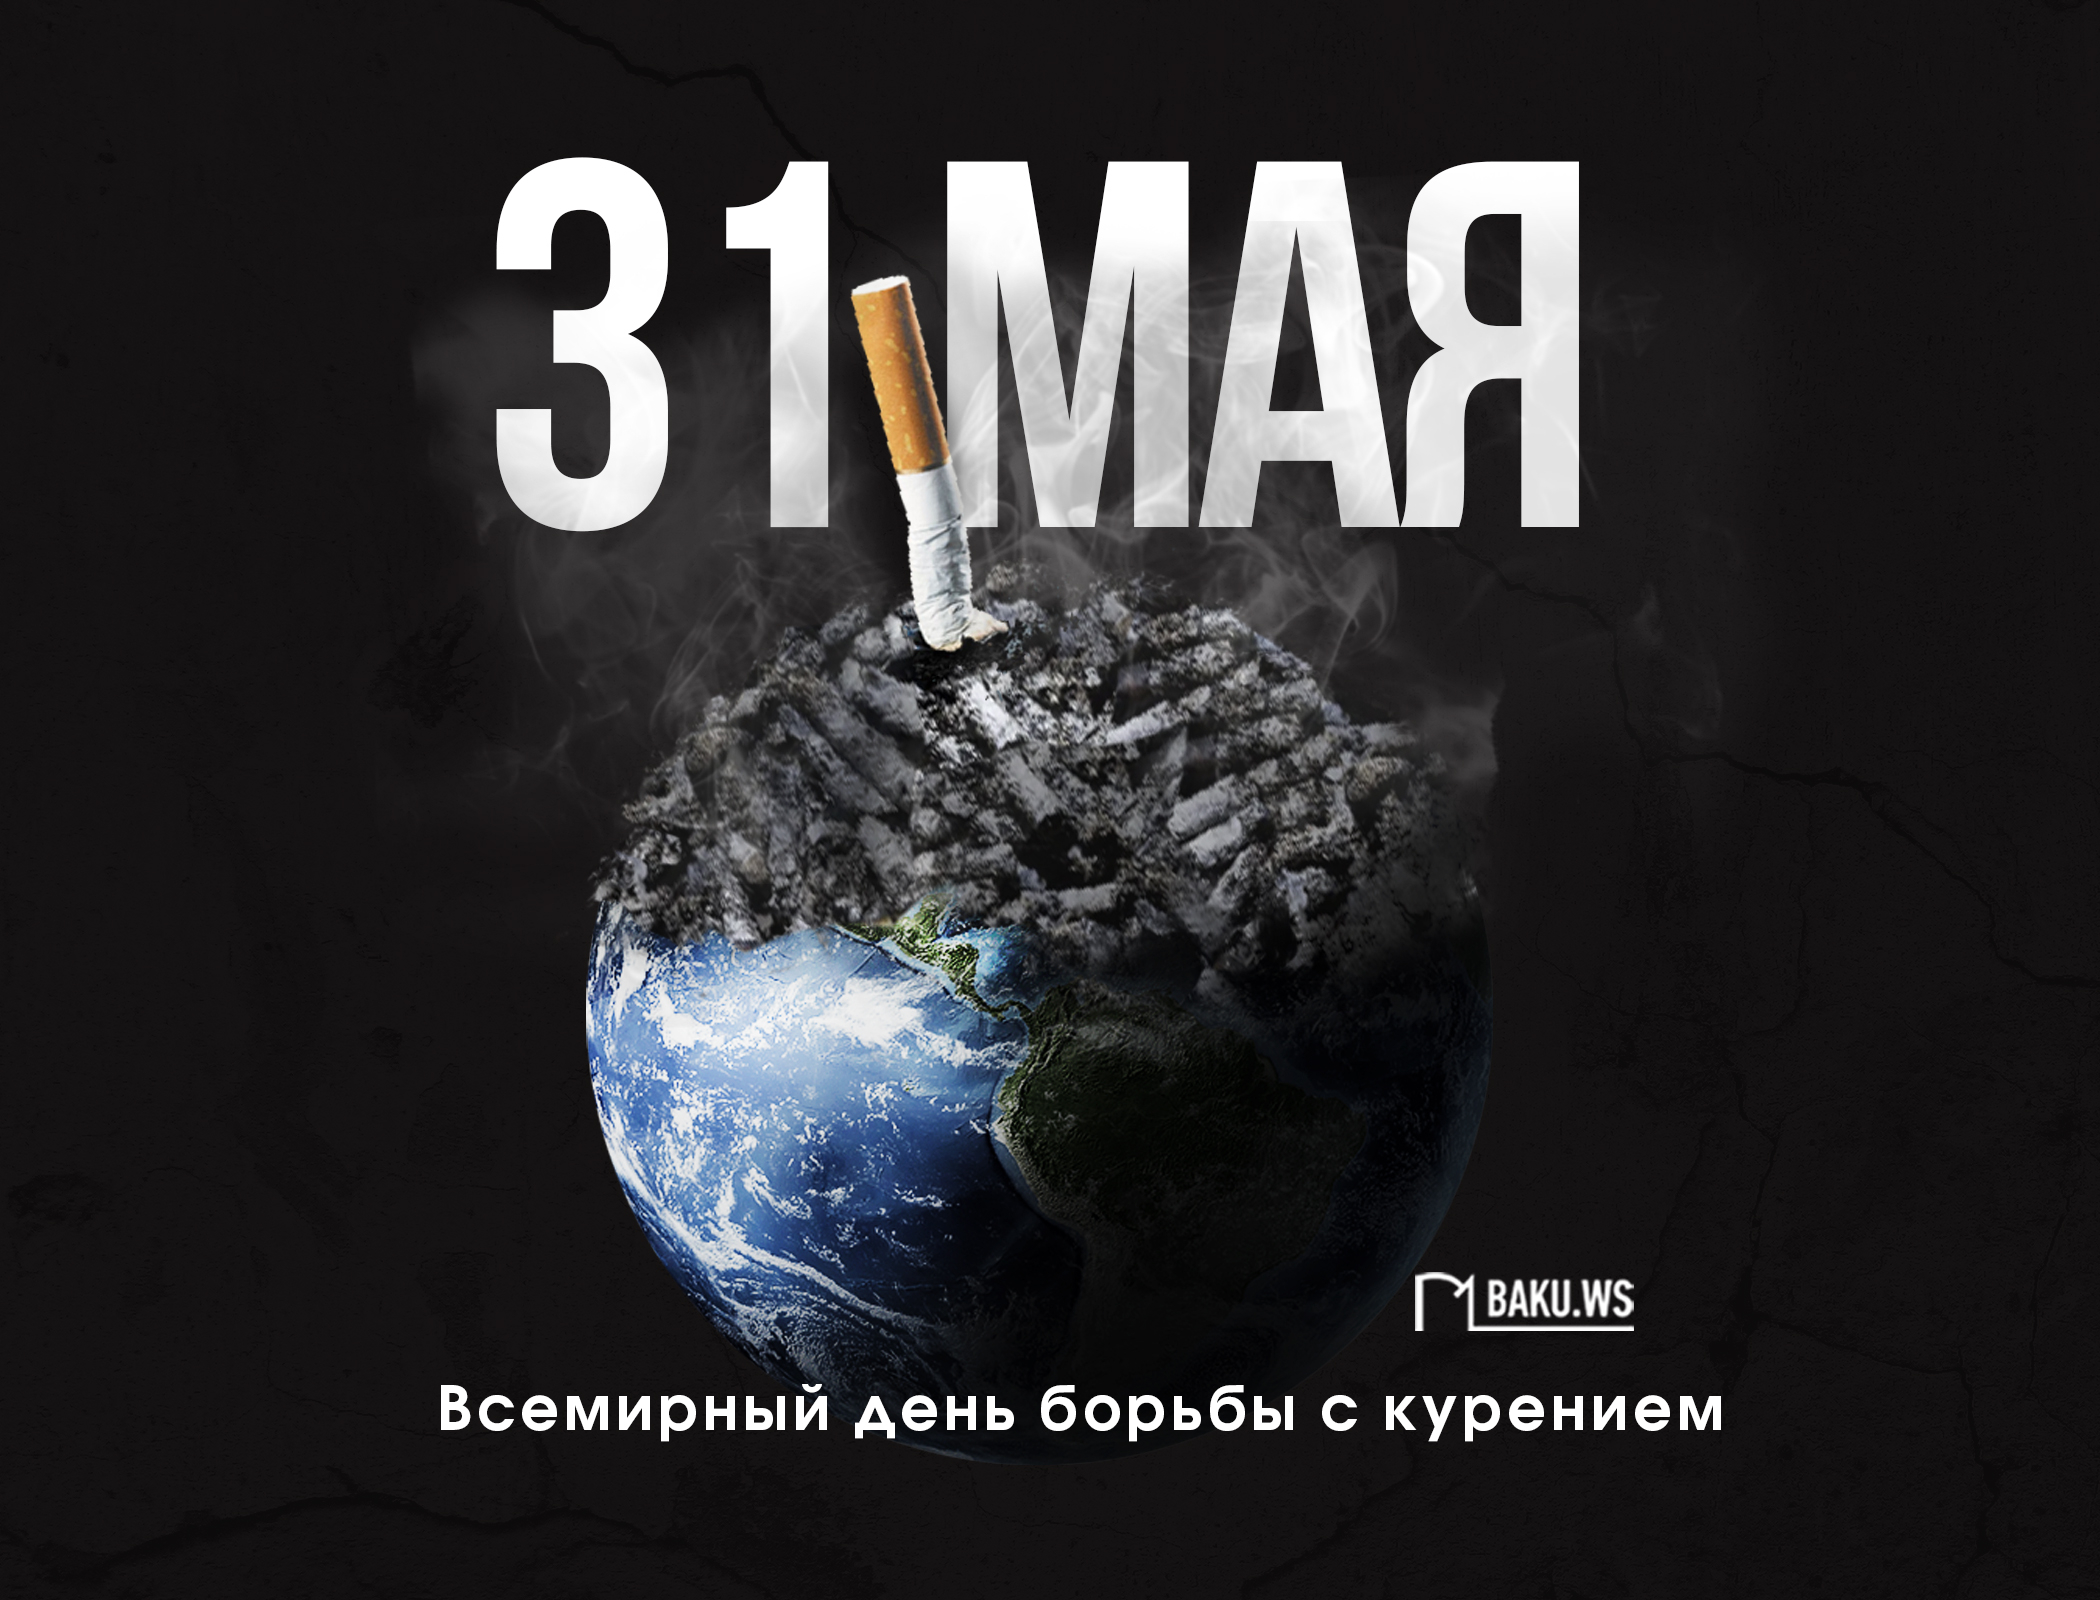 Сегодня отмечается Всемирный день борьбы с курением